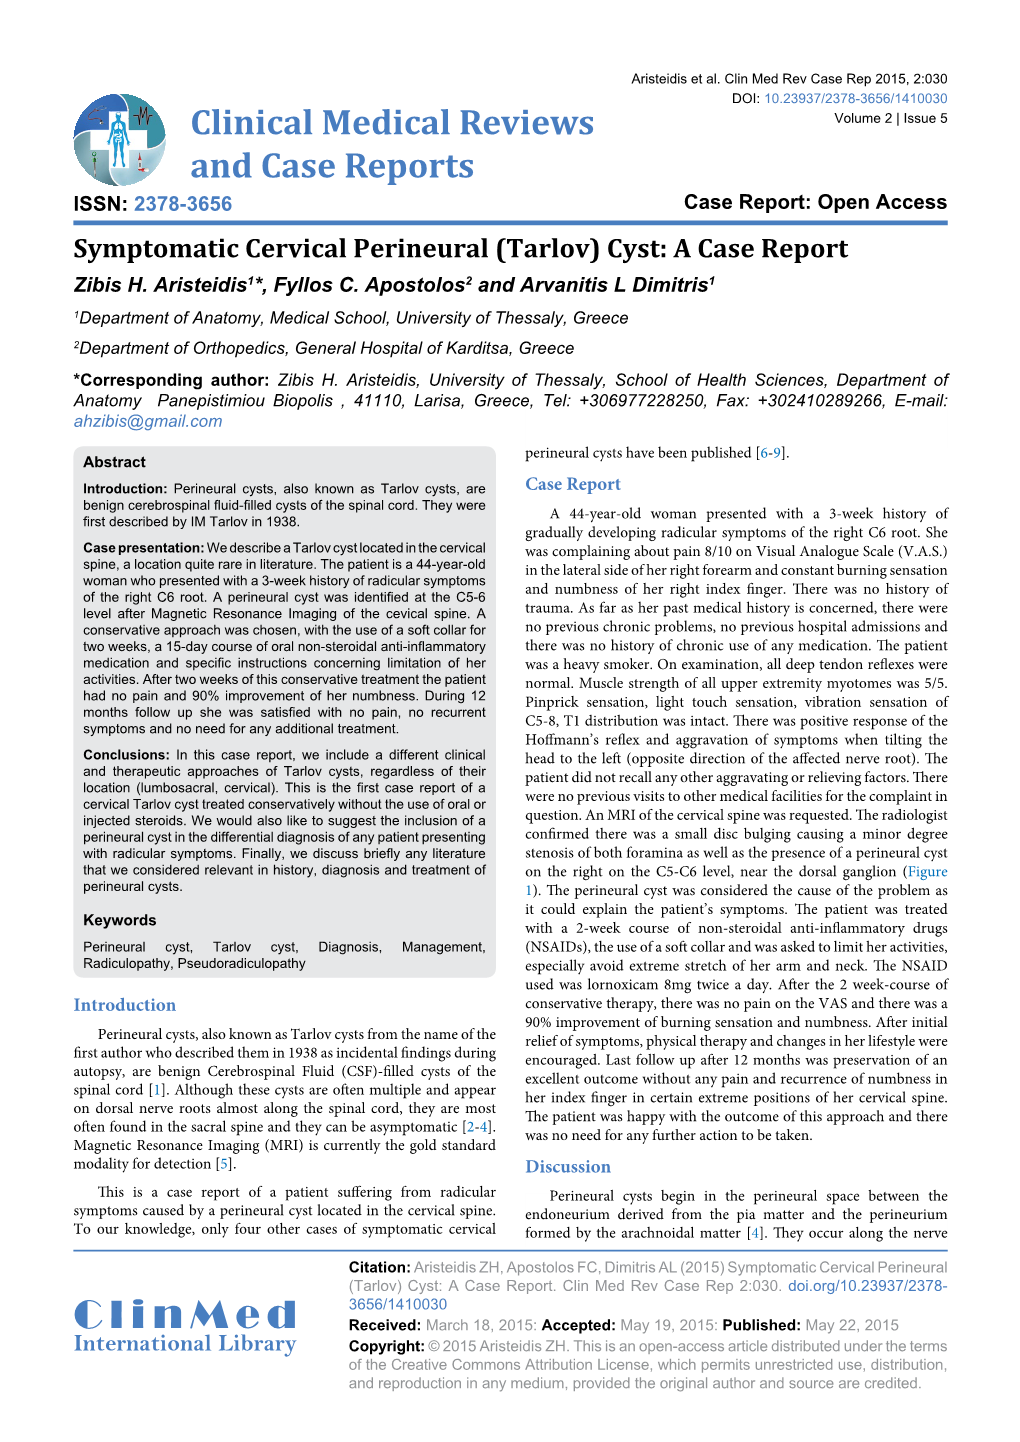 (Tarlov) Cyst: a Case Report Zibis H